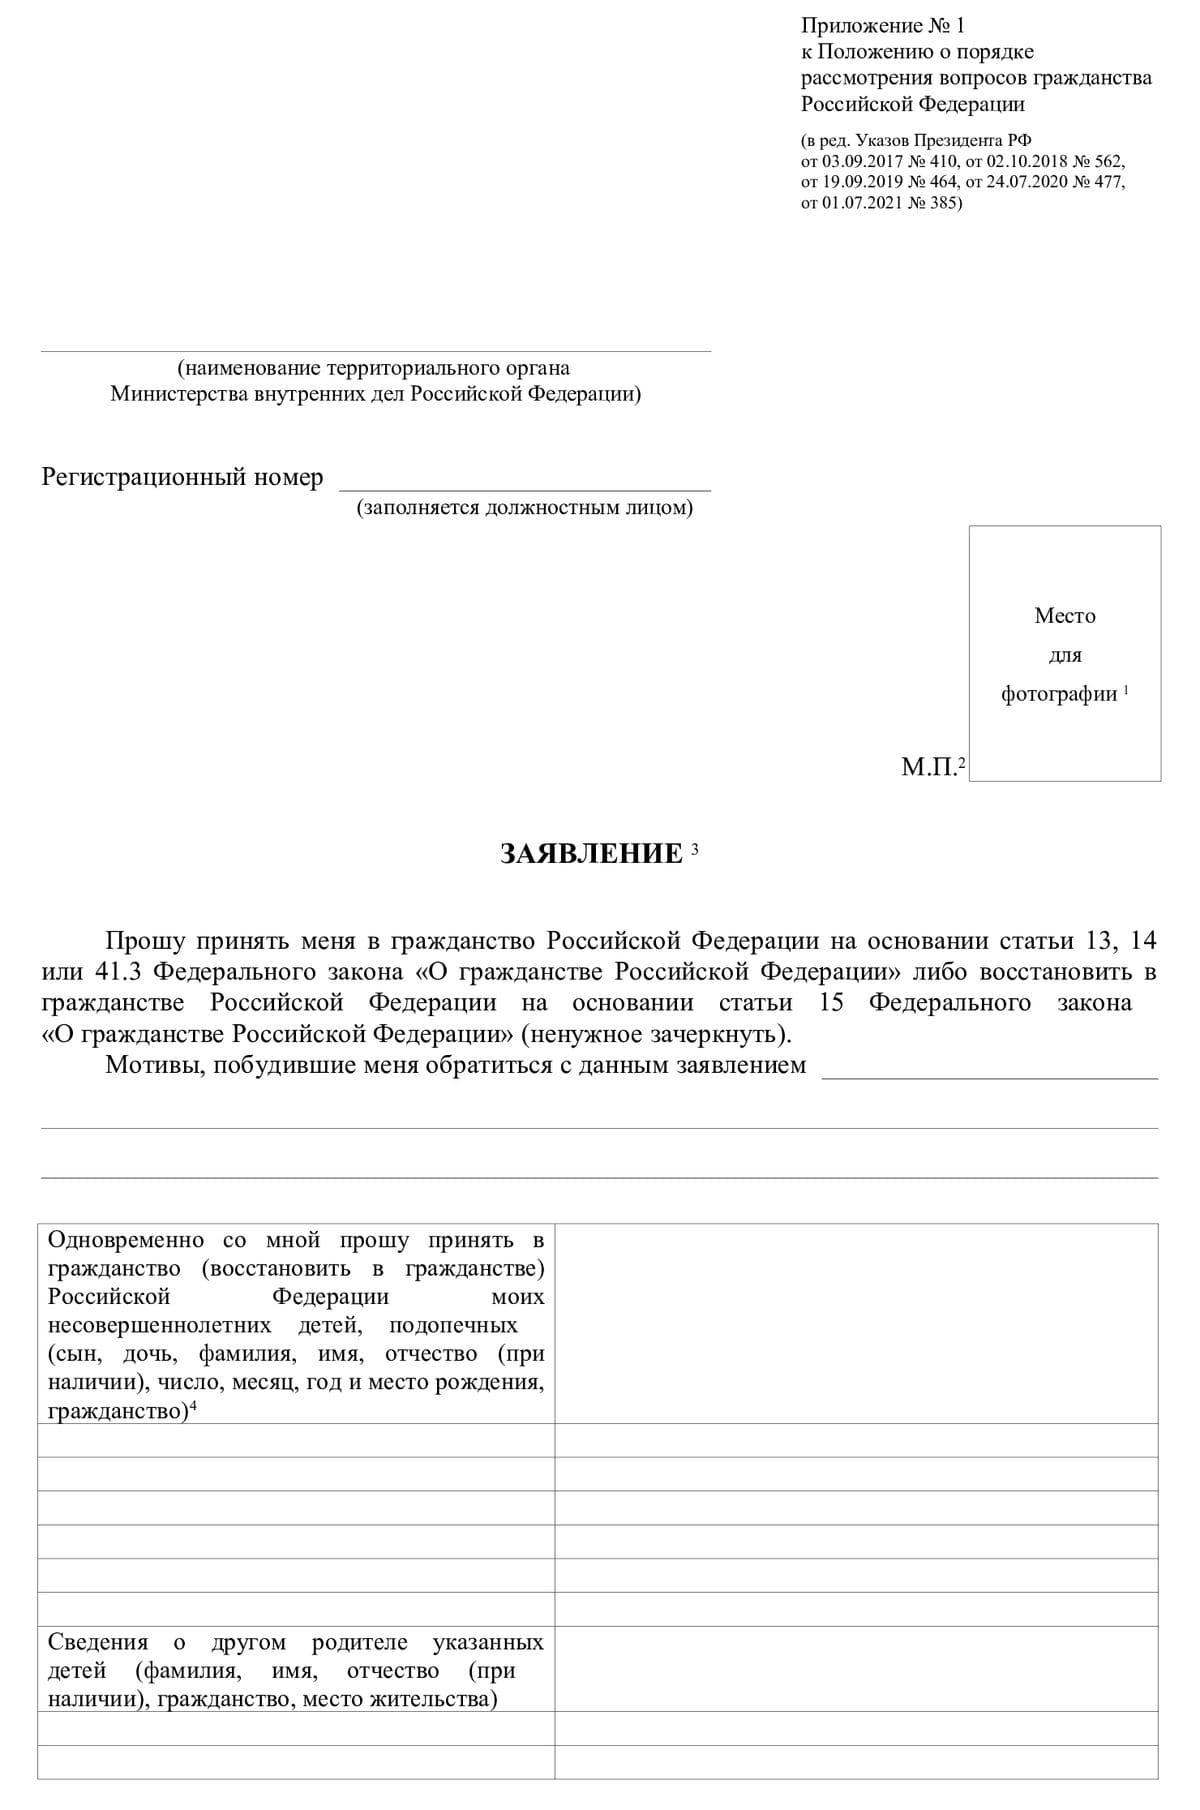 Приложение 1 заявления на принятие гражданства РФ